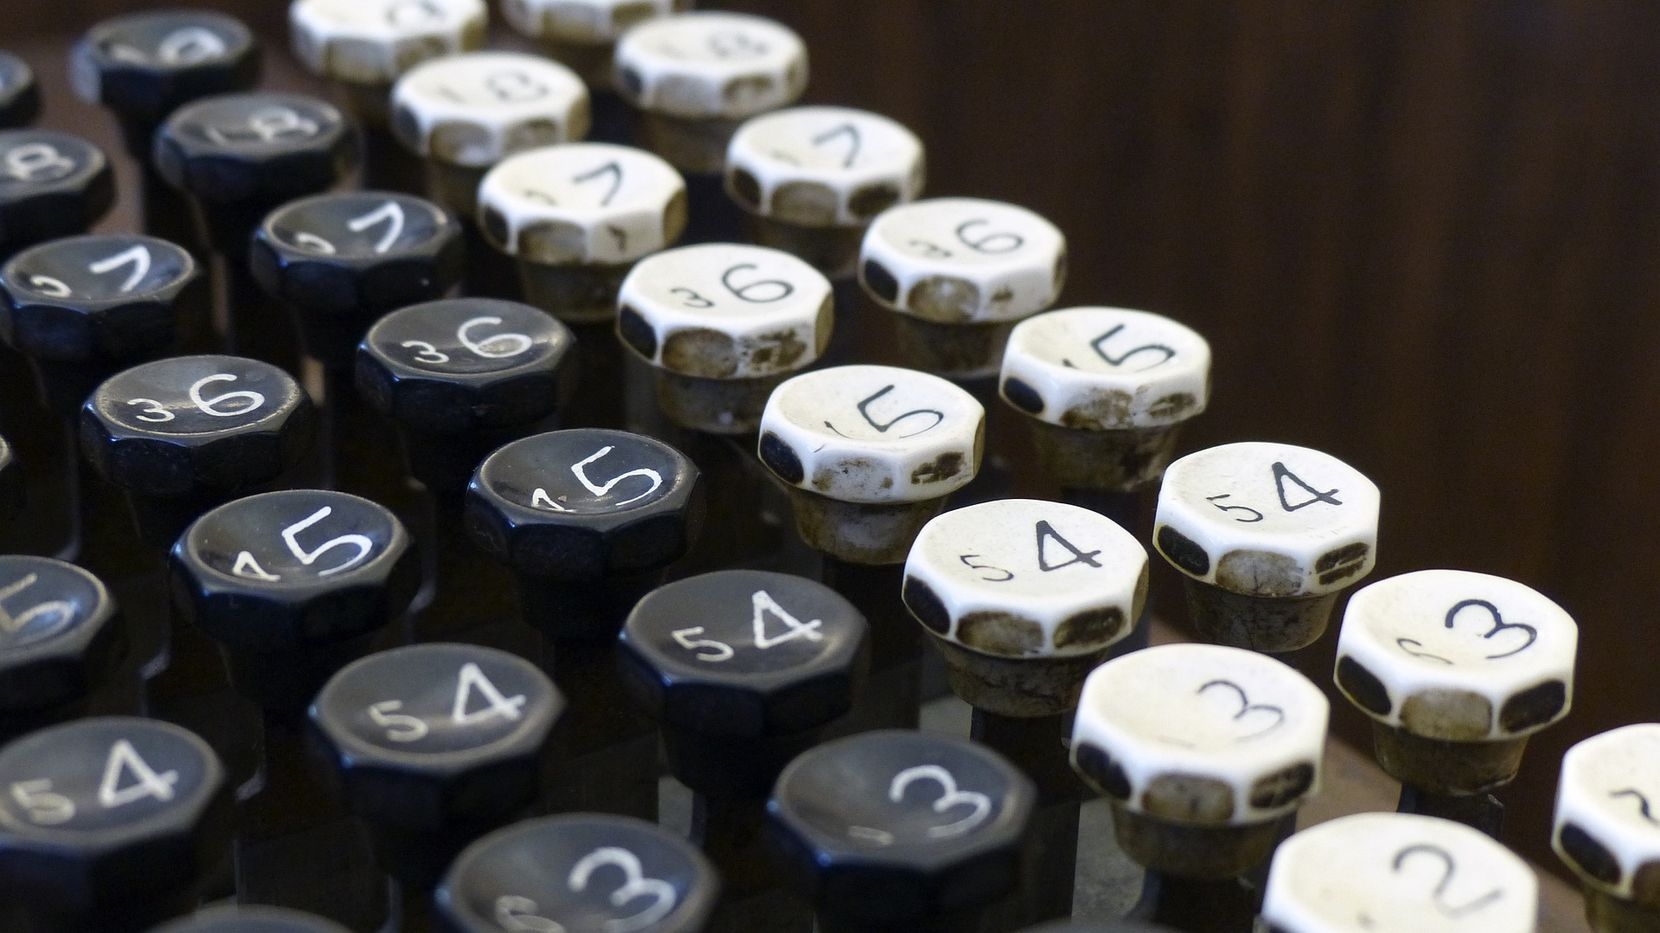 Zahlentastatur einer alten Rechenmaschine mit schwarzen und weissen Tasten.